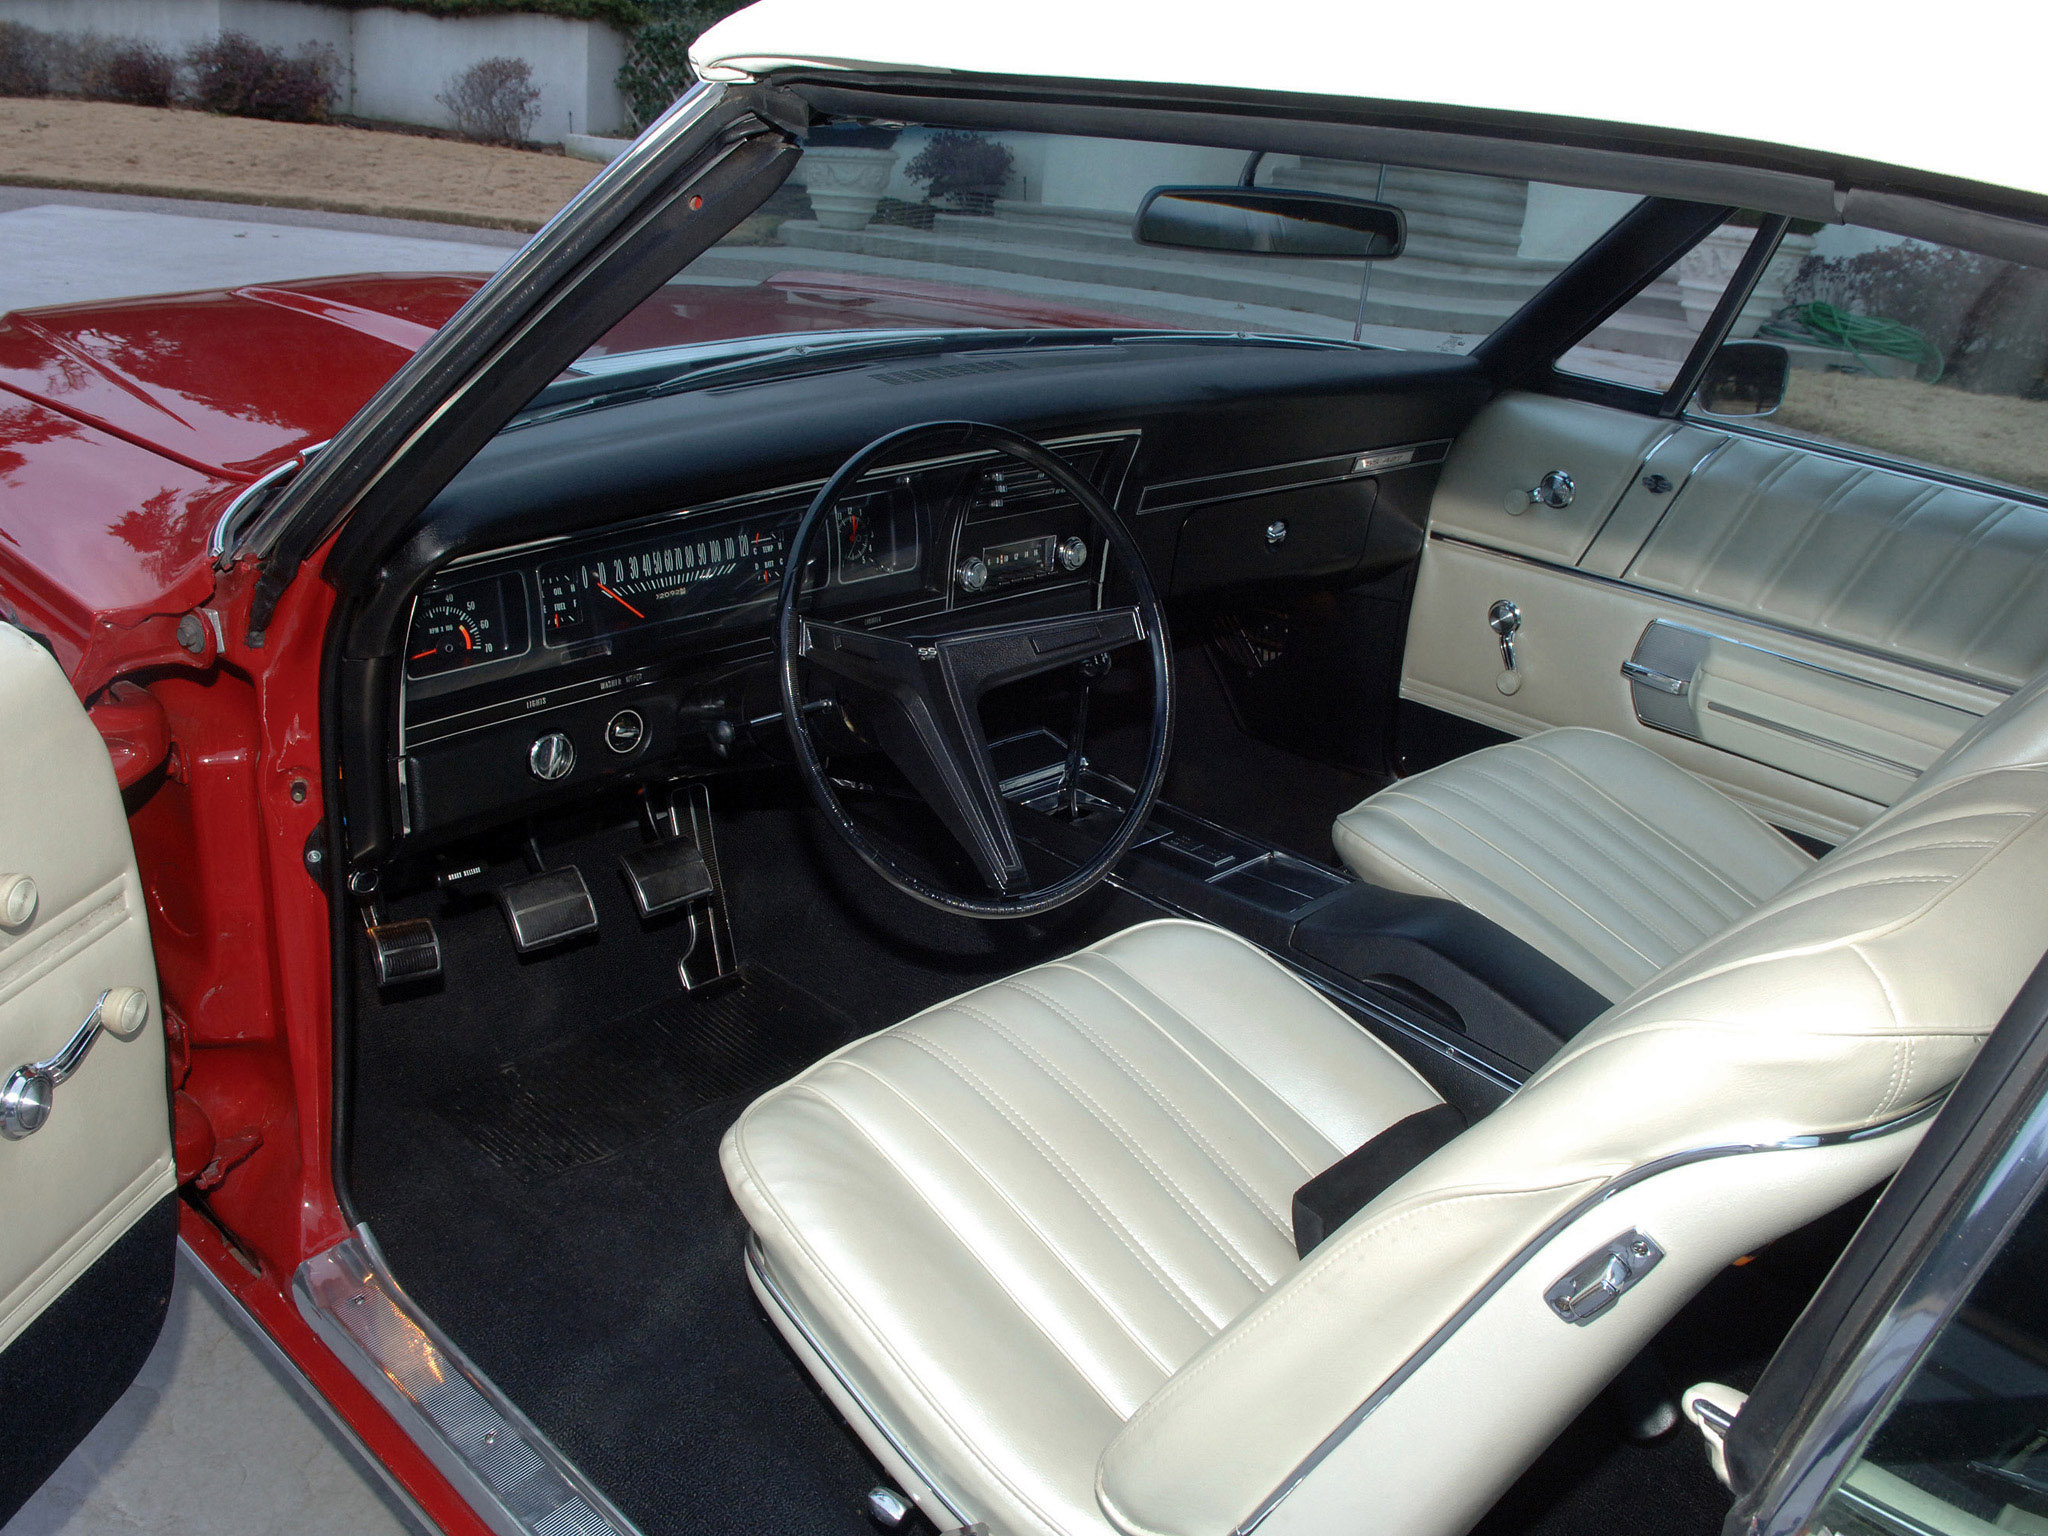 1968 impala interior doors emblem